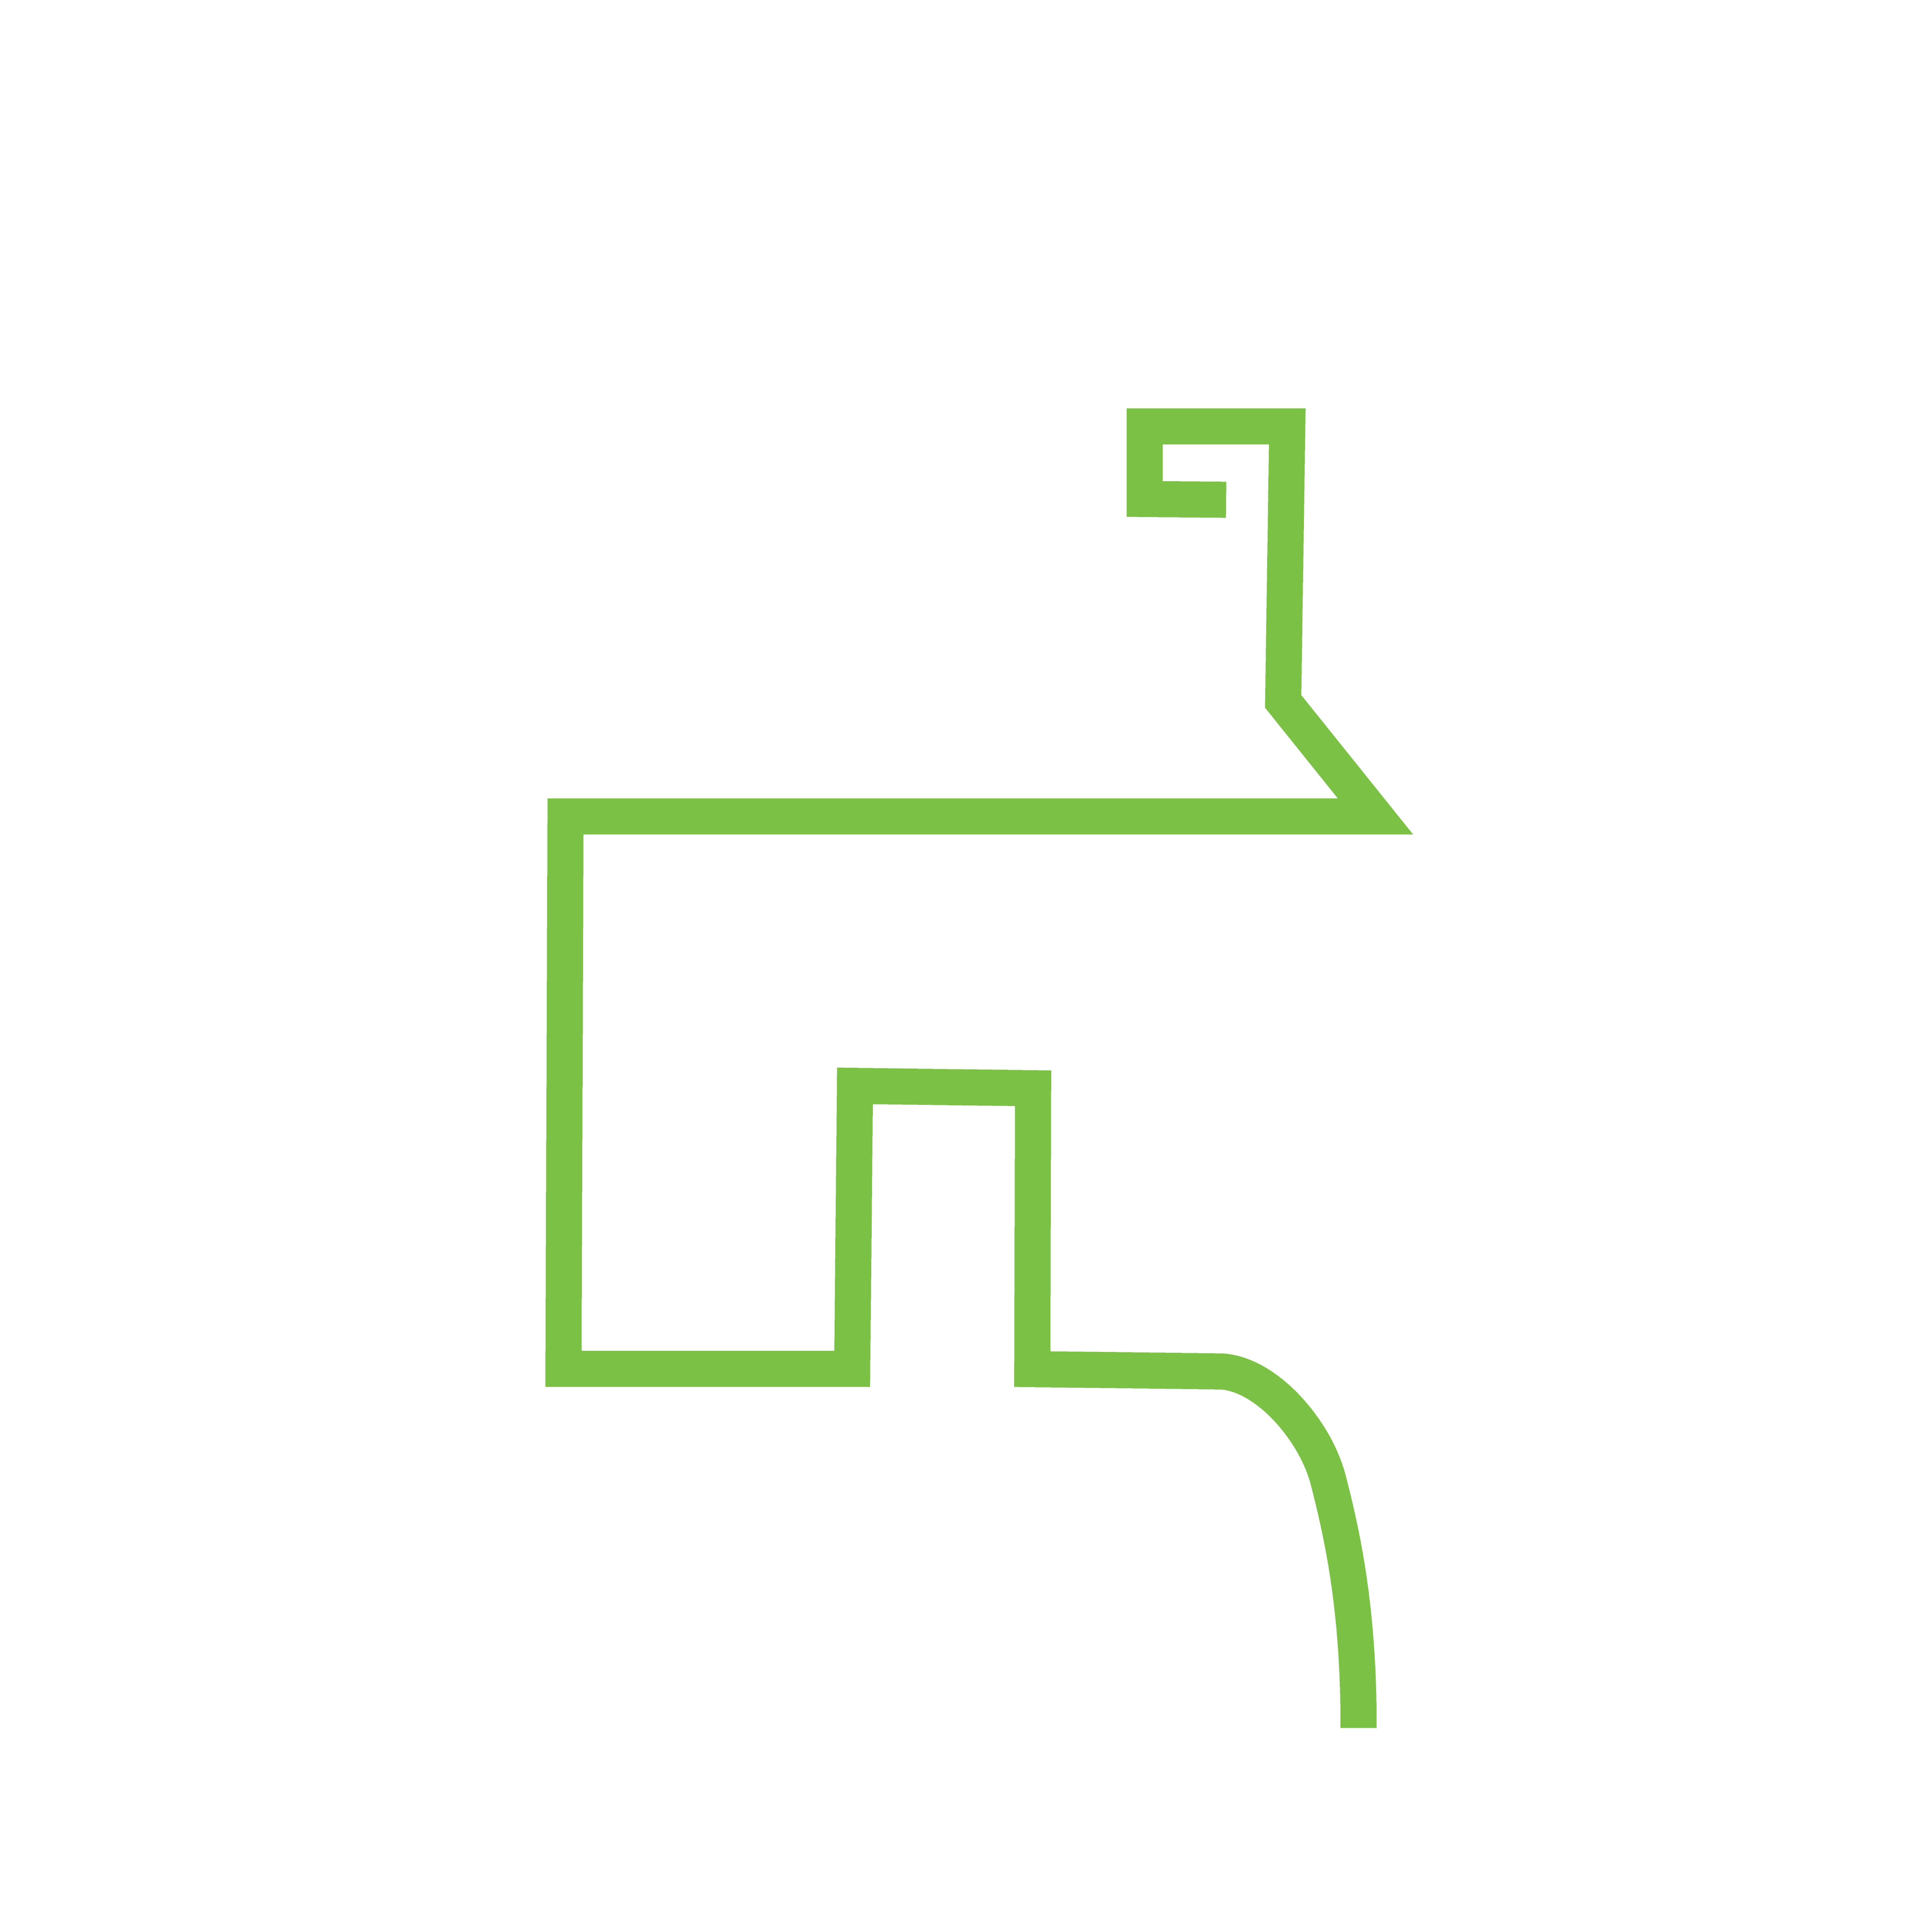 Homeless support logo